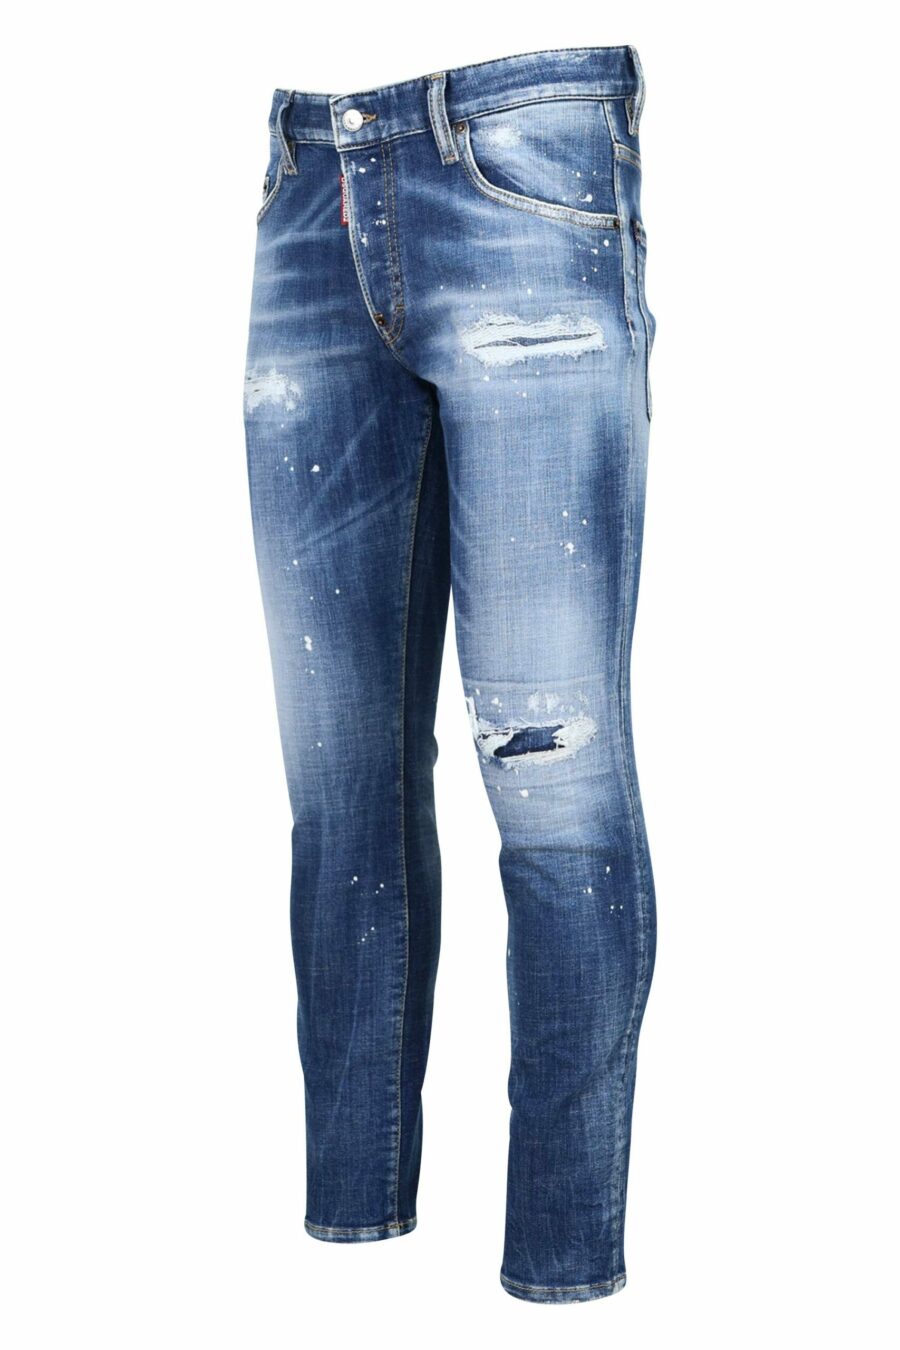 Skater-Jeans hellblau mit Rissen und Rissen - 8052134939482 2 1 skaliert